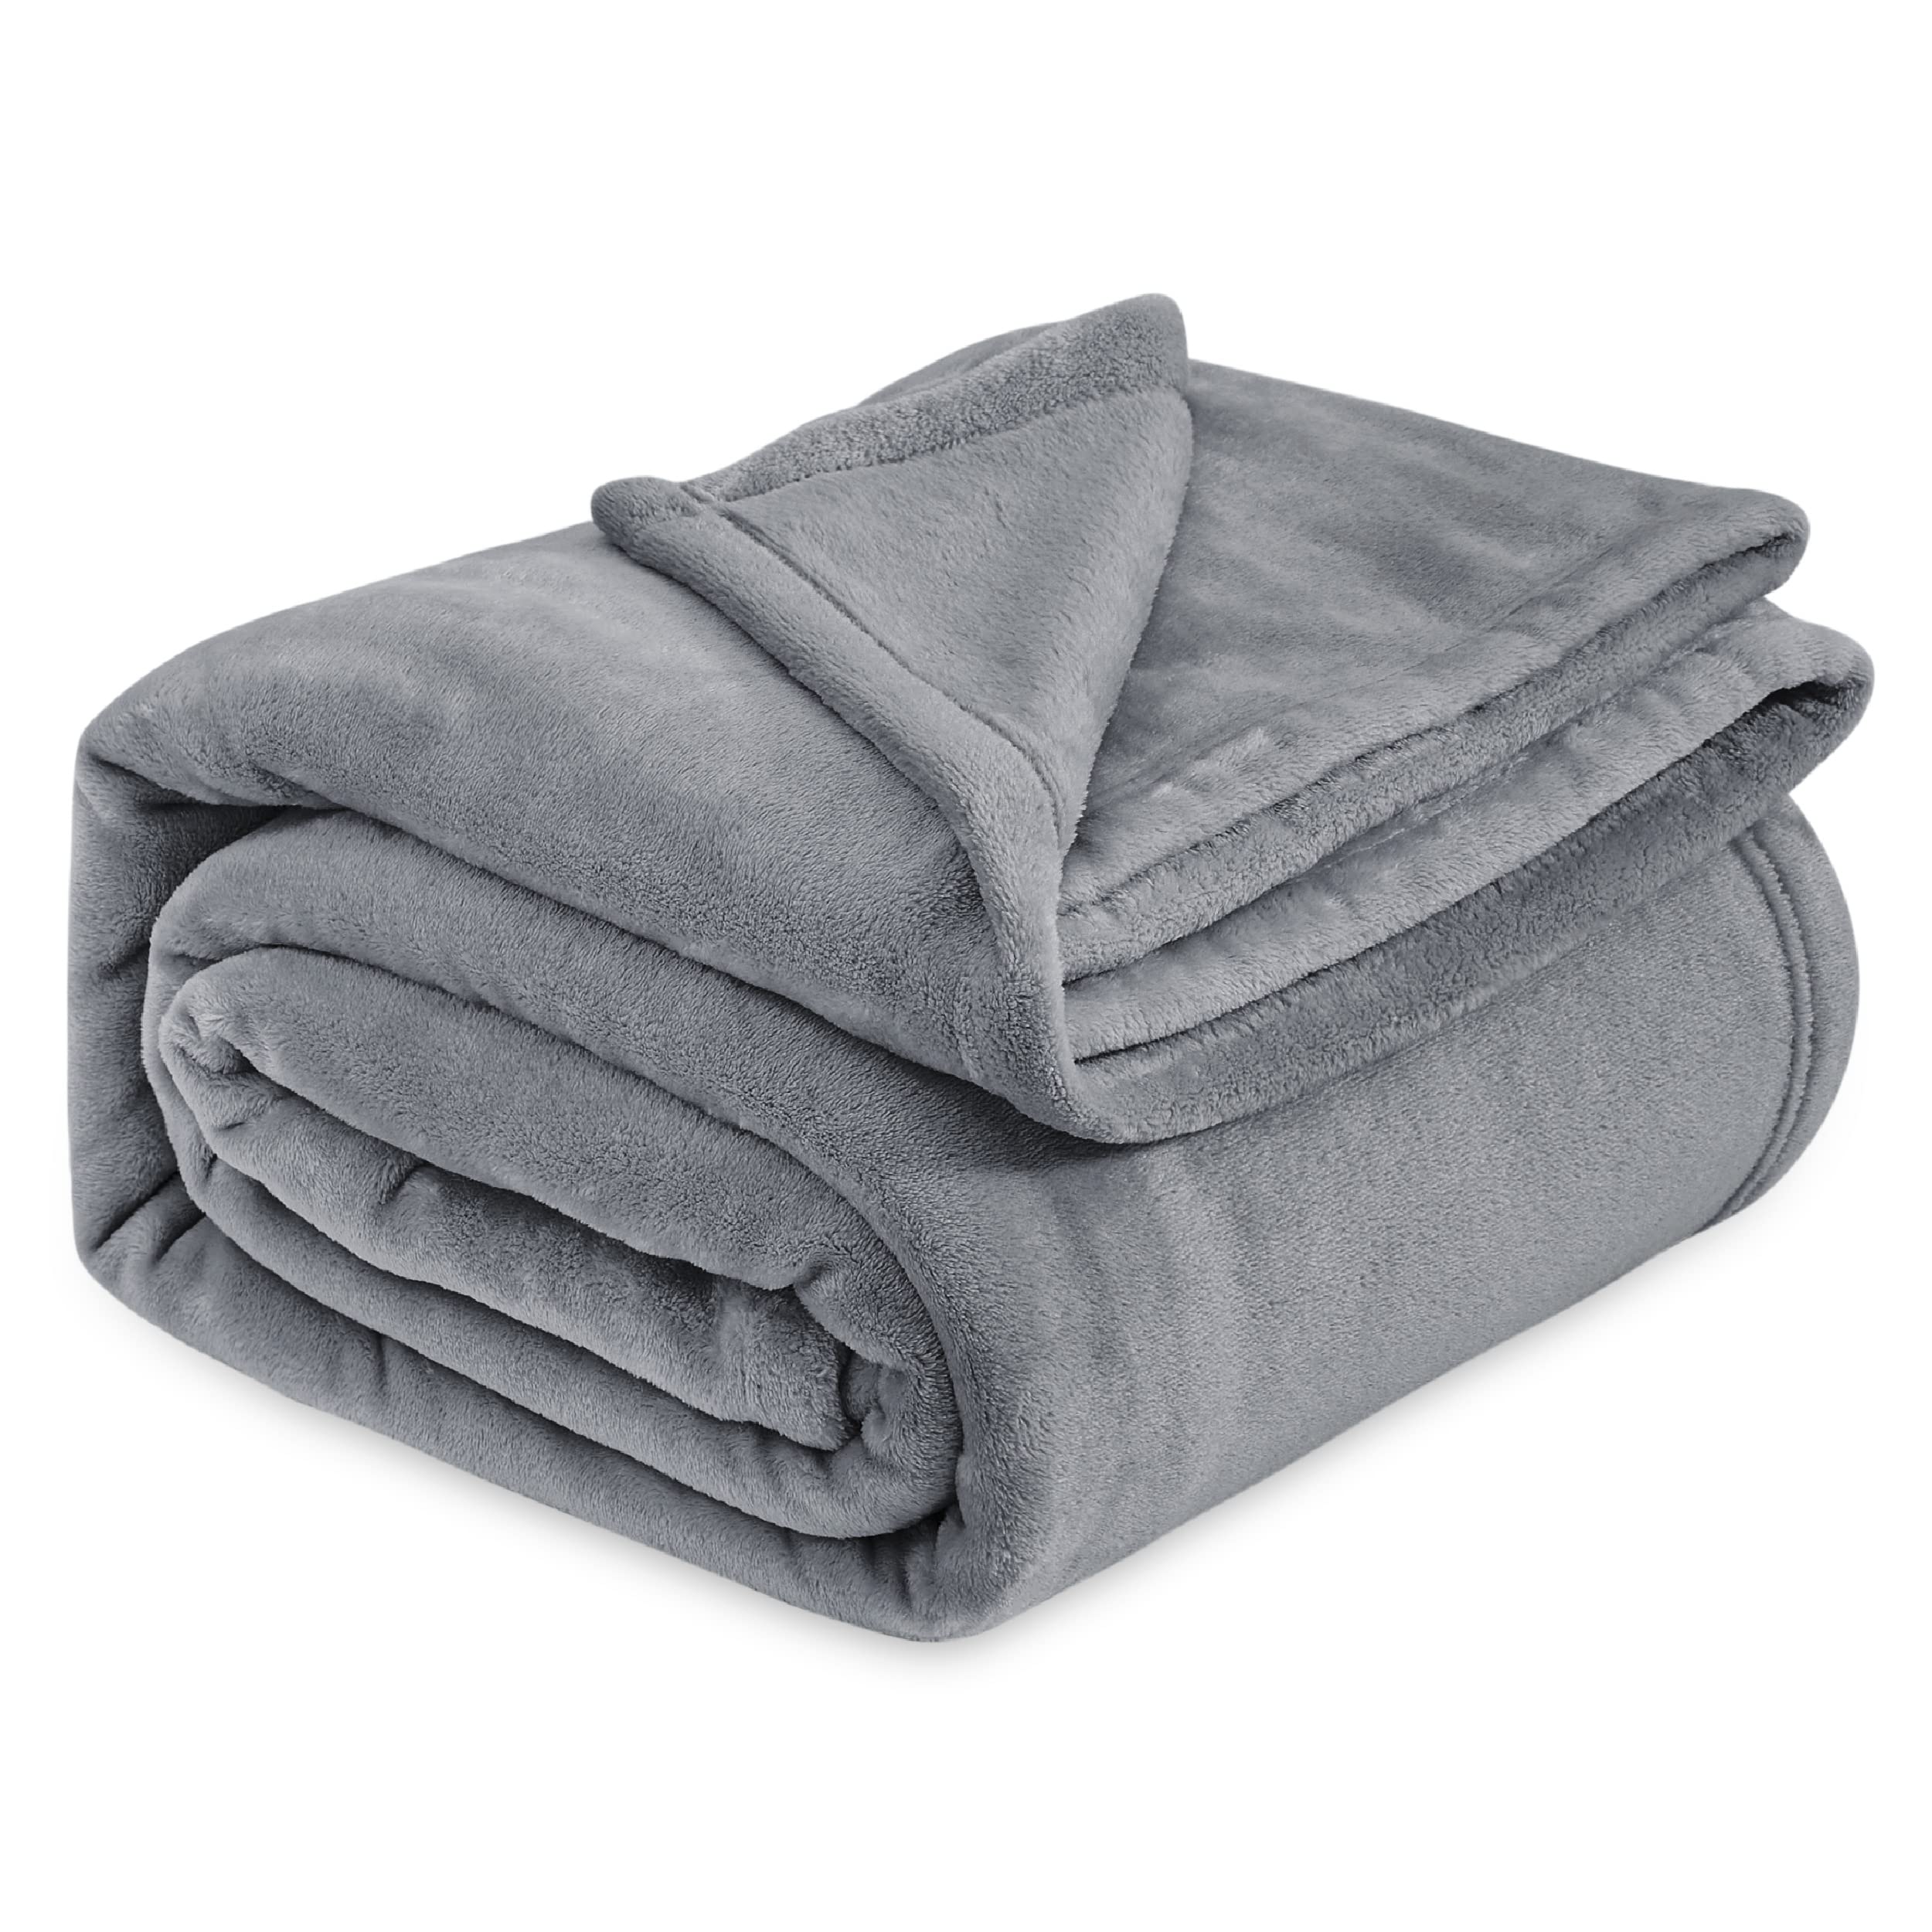 Book Cover Bedsure Fleece Blanket Queen Size Grey Lightweight Super Soft Cozy Luxury Bed Blanket Microfiber